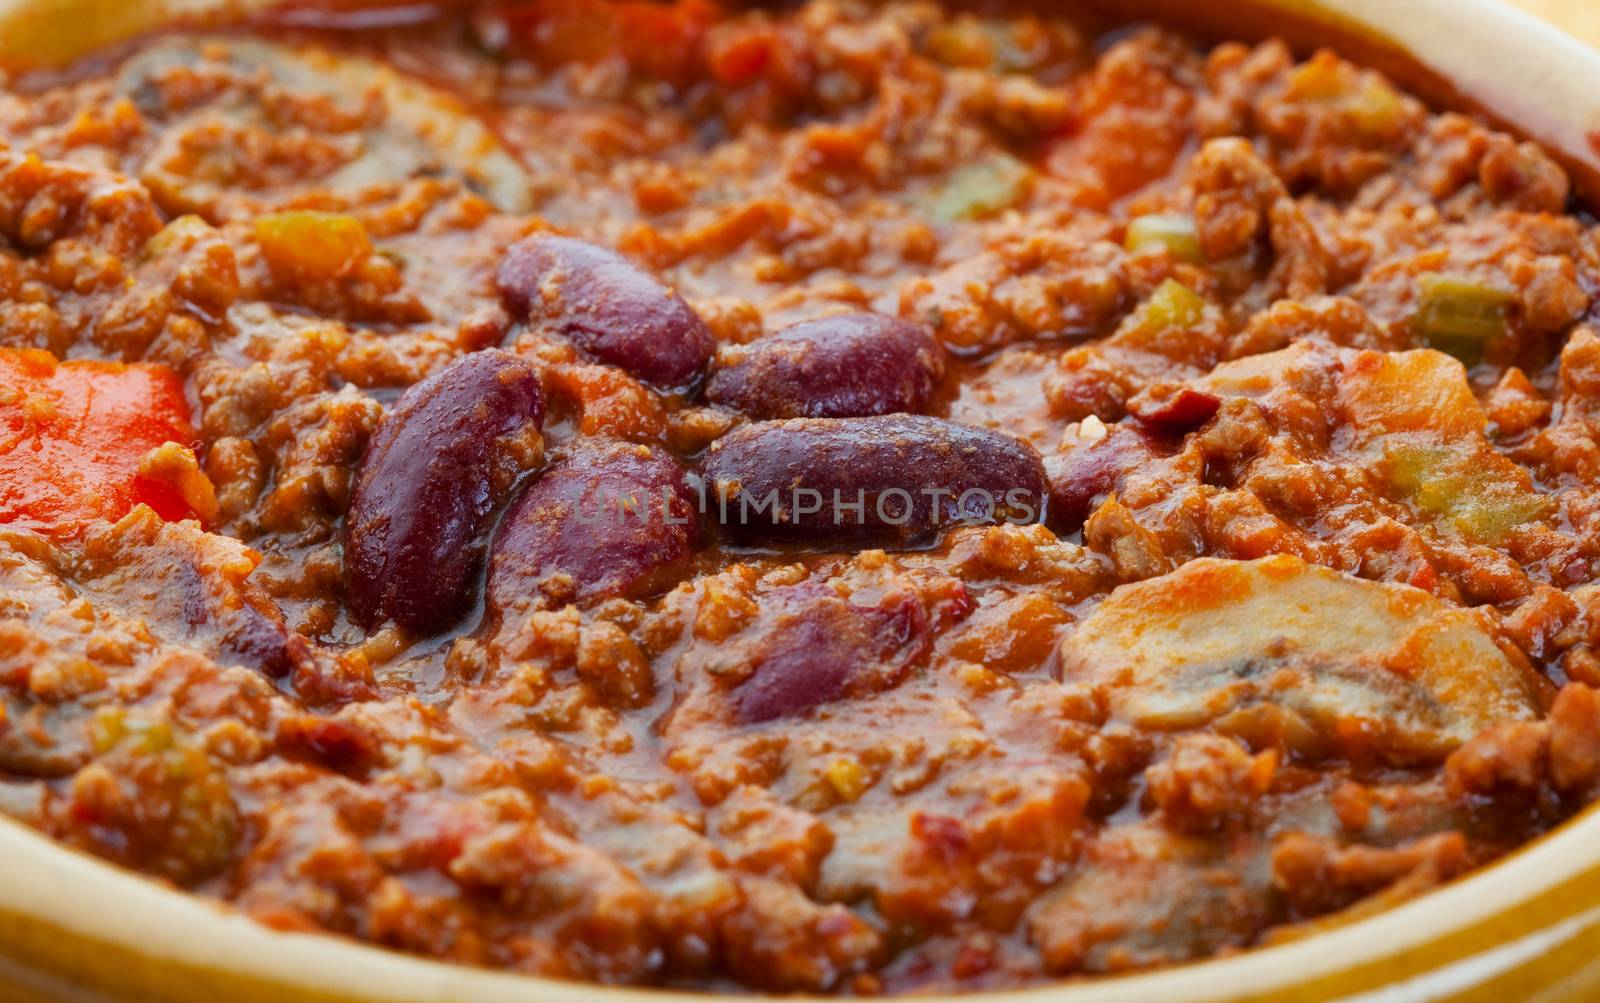 A closeup of chili con carne in a bowl.